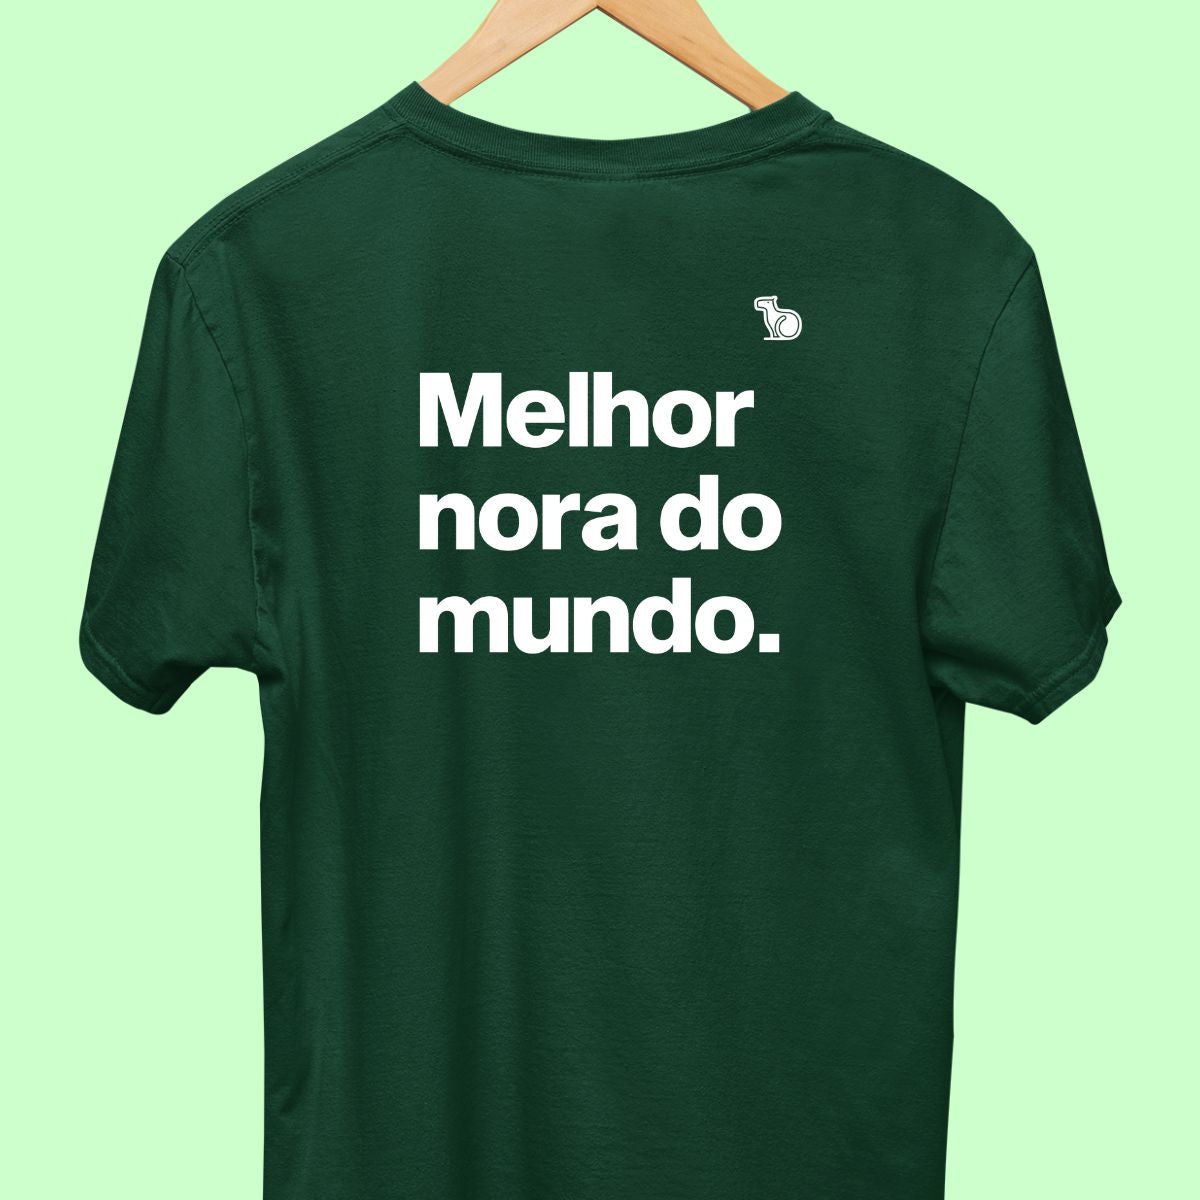 Camiseta com a frase "Melhor nora do mundo."  masculina verde.